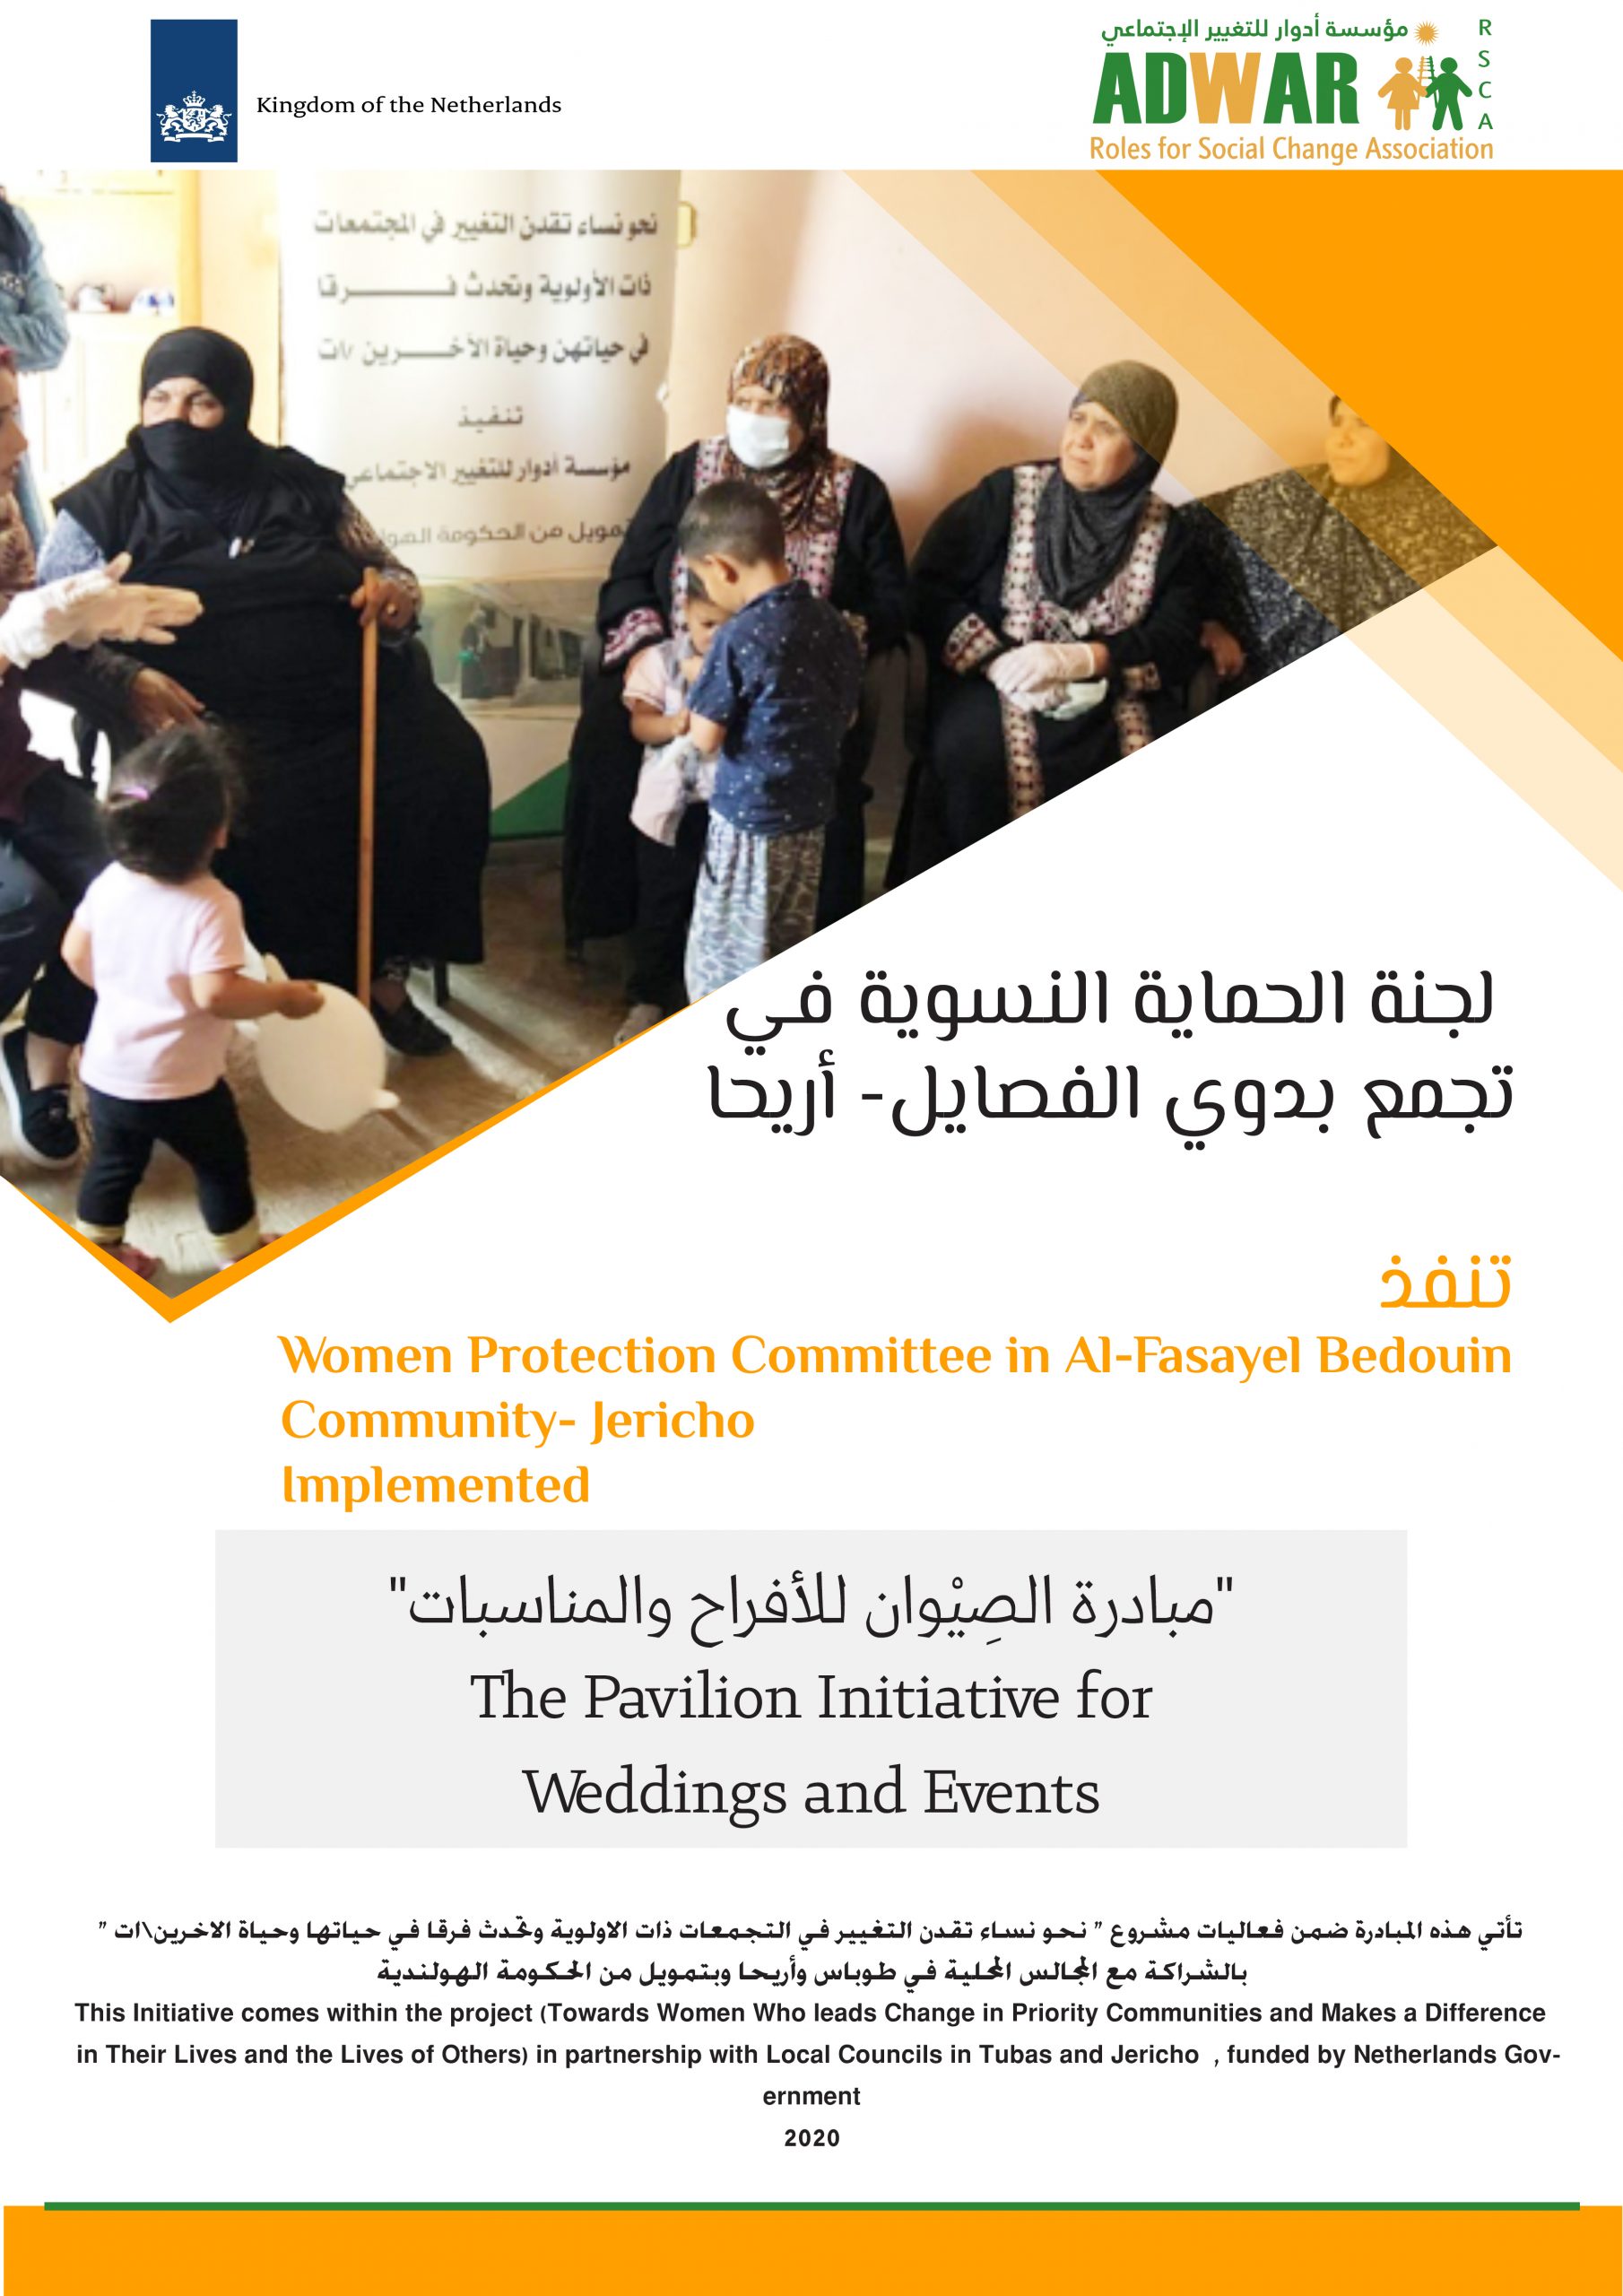  لجنة الحماية النسوية في تجمع بدوي الفصايل ـ اريحا